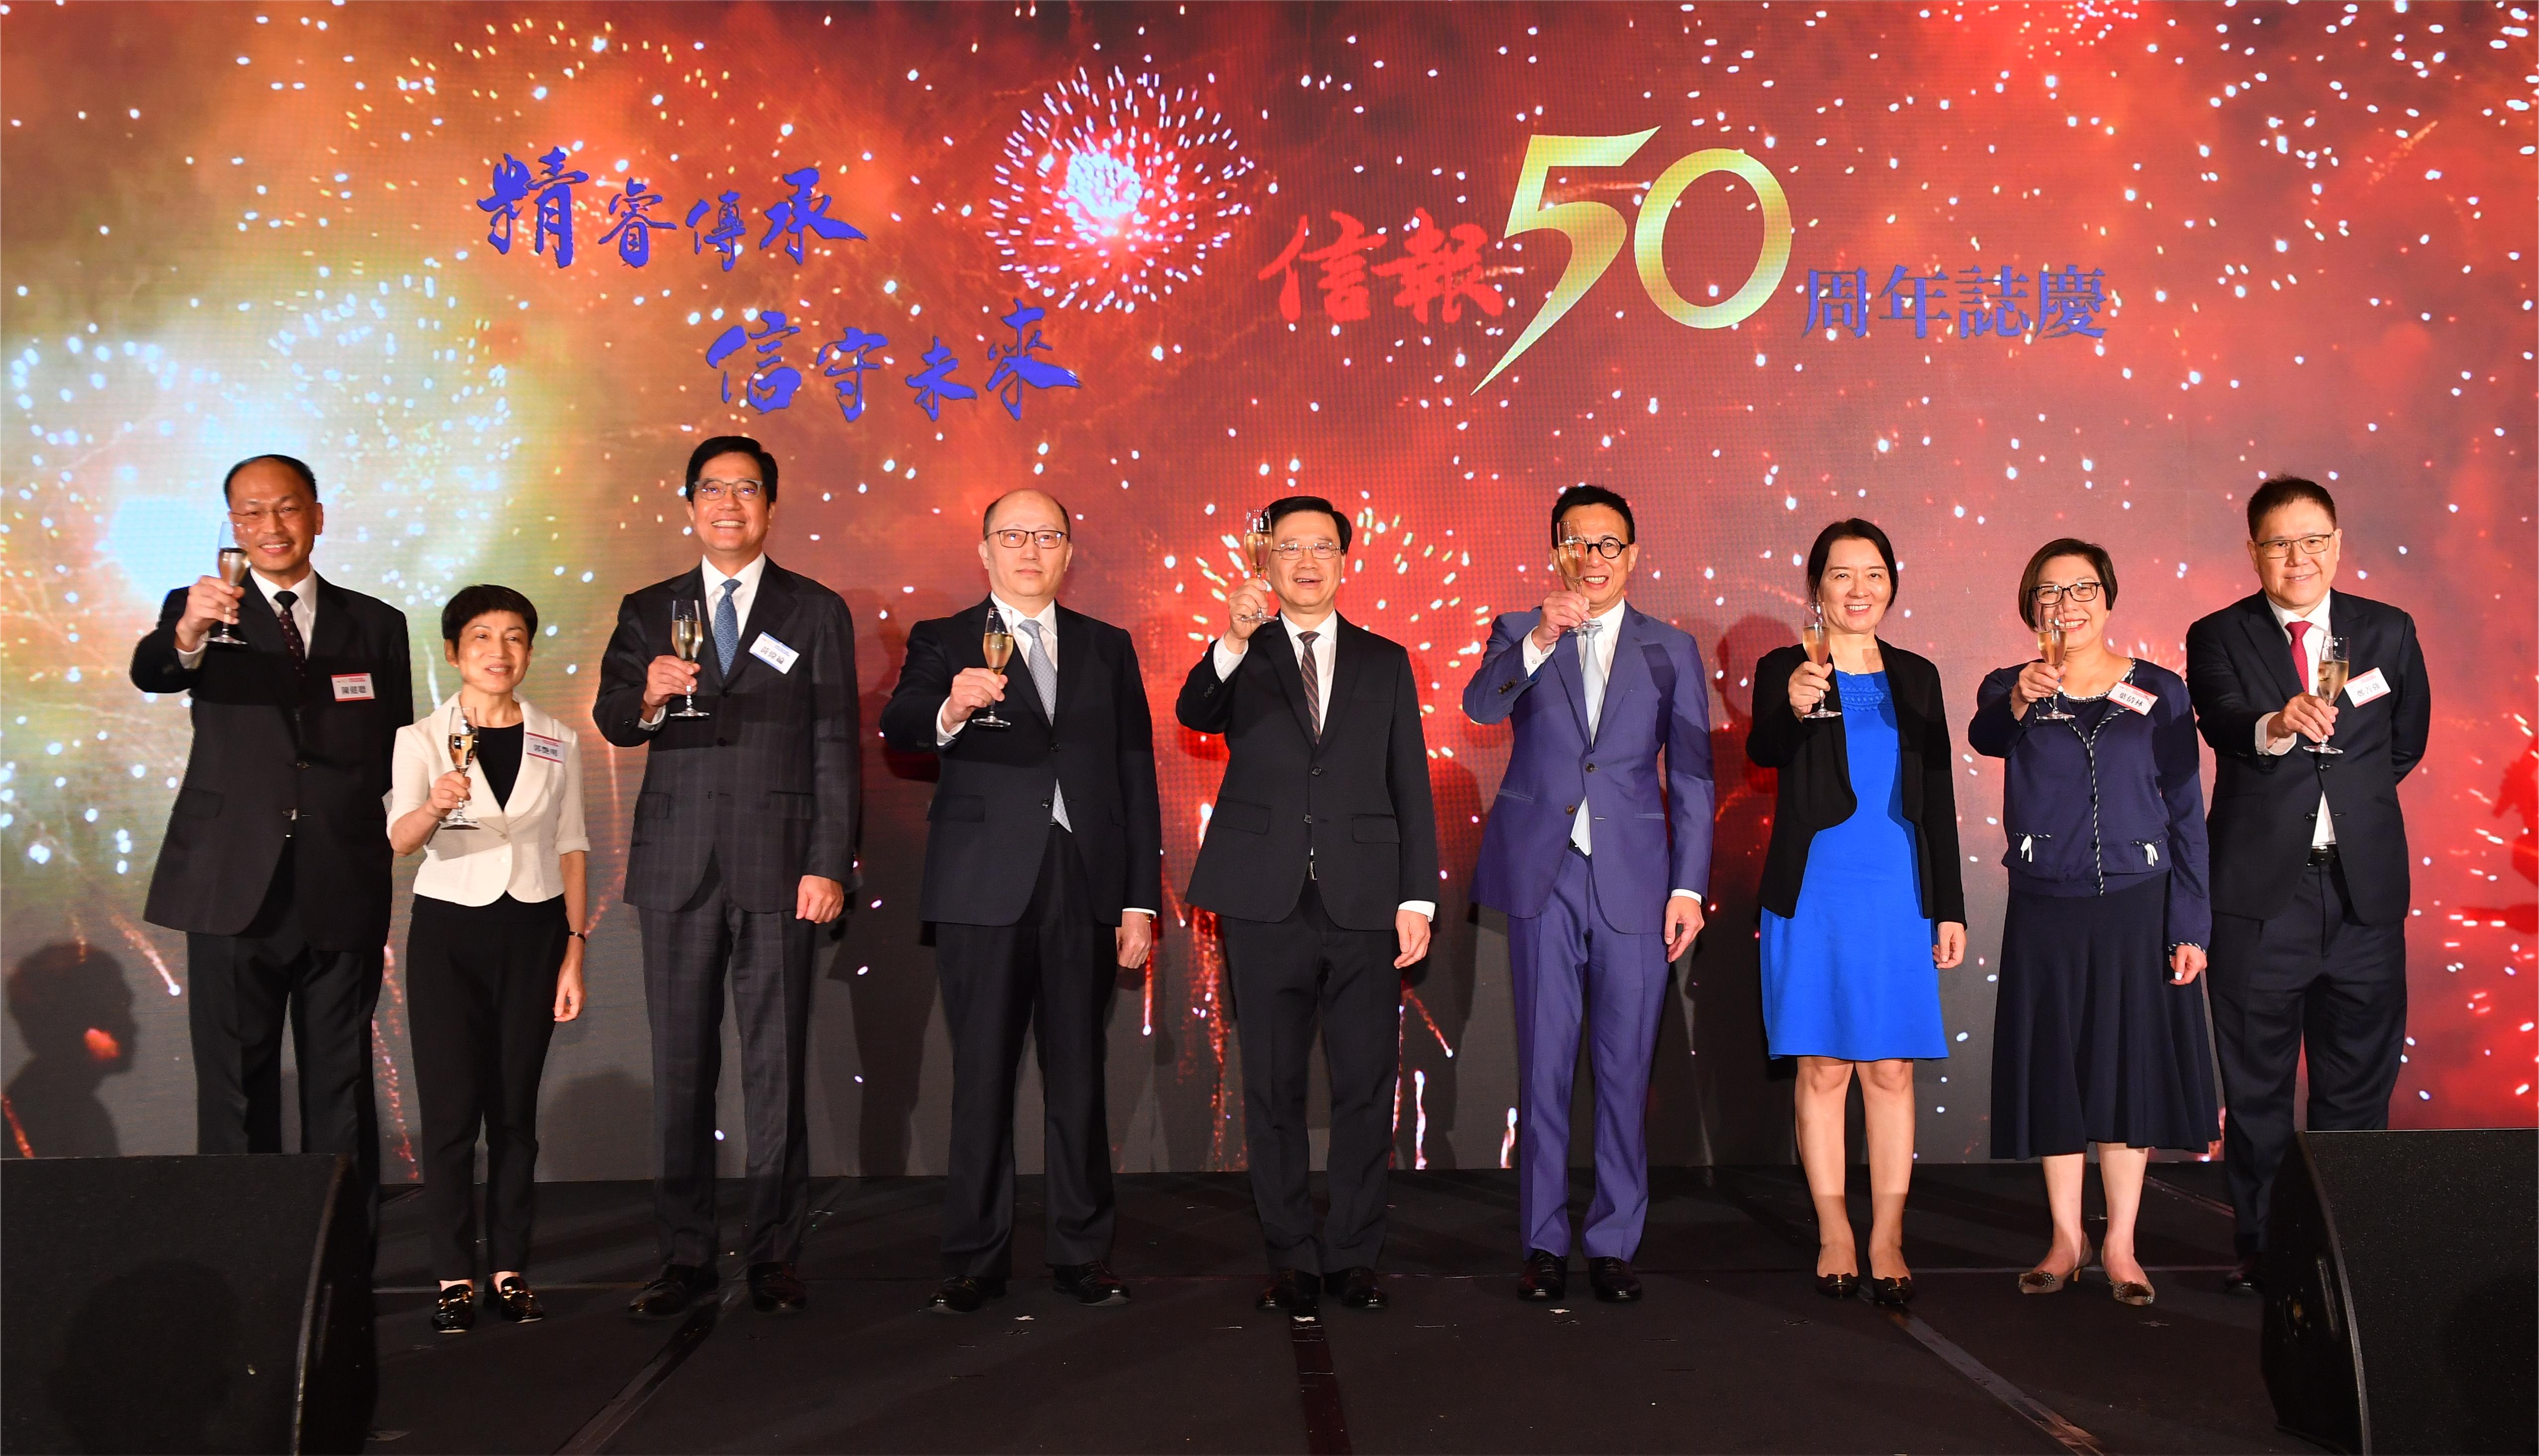 郑雁雄出席《信报》创刊50周年庆祝活动 强调香港能够在世界变局中育新机开新局